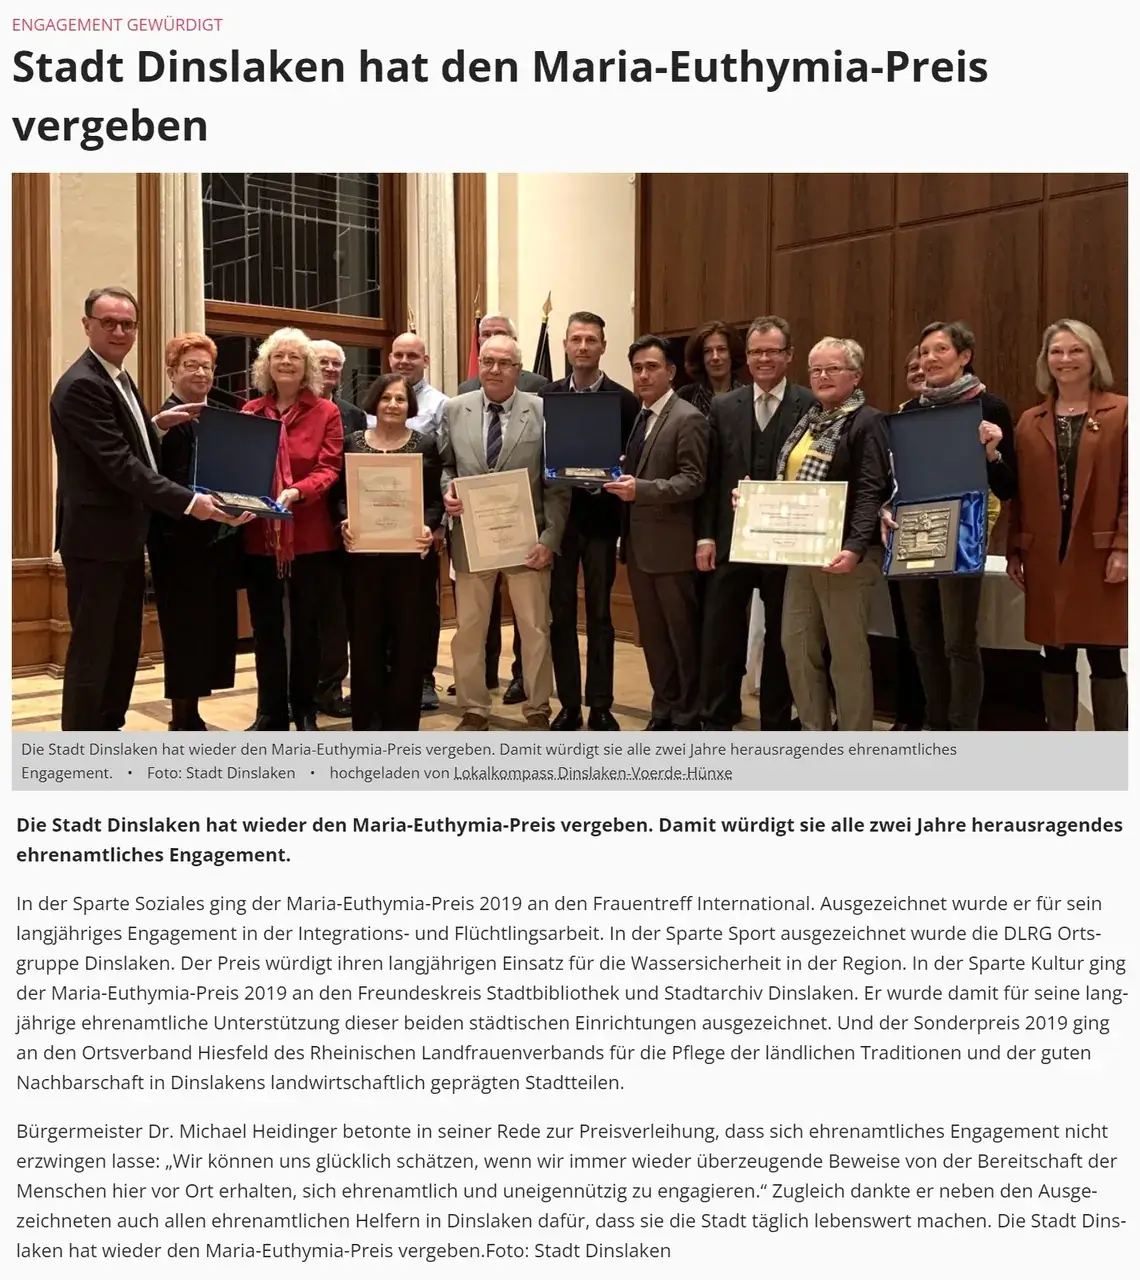 Niederrheinischer Anzeiger - Stadt Dinslaken hat den Maria-Euthymia-Preis vergeben - 20 November 2019